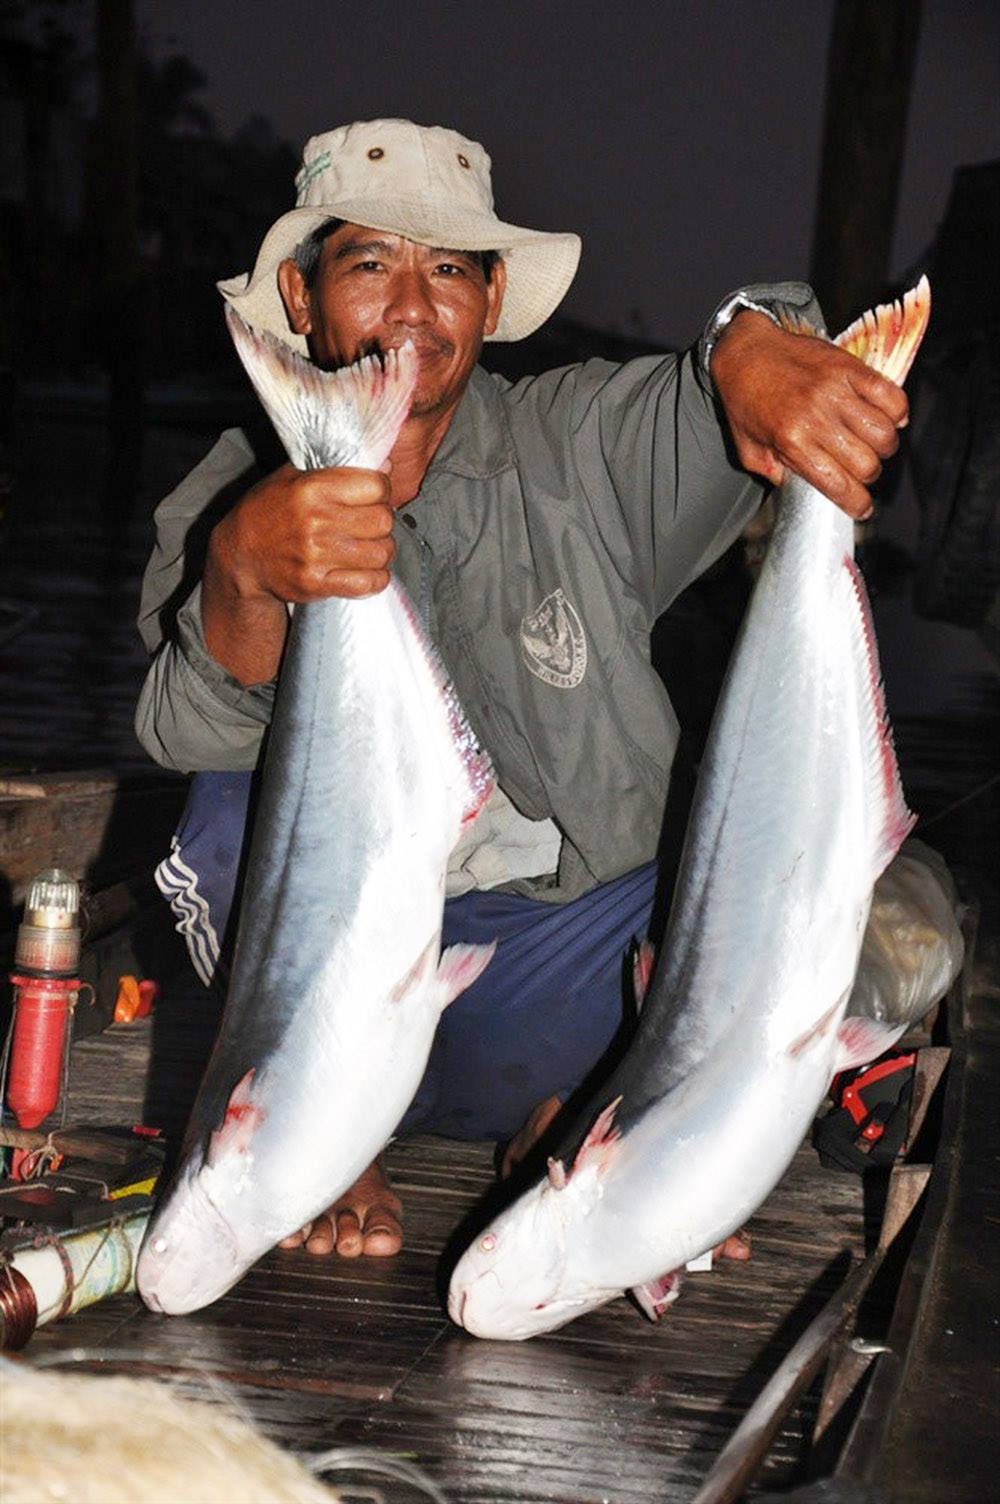 Nông dân một xã ở Trà Vinh chuyển từ nuôi tôm sang nuôi cá bông lau trong ao đất cho lợi nhuận cao - Ảnh 2.